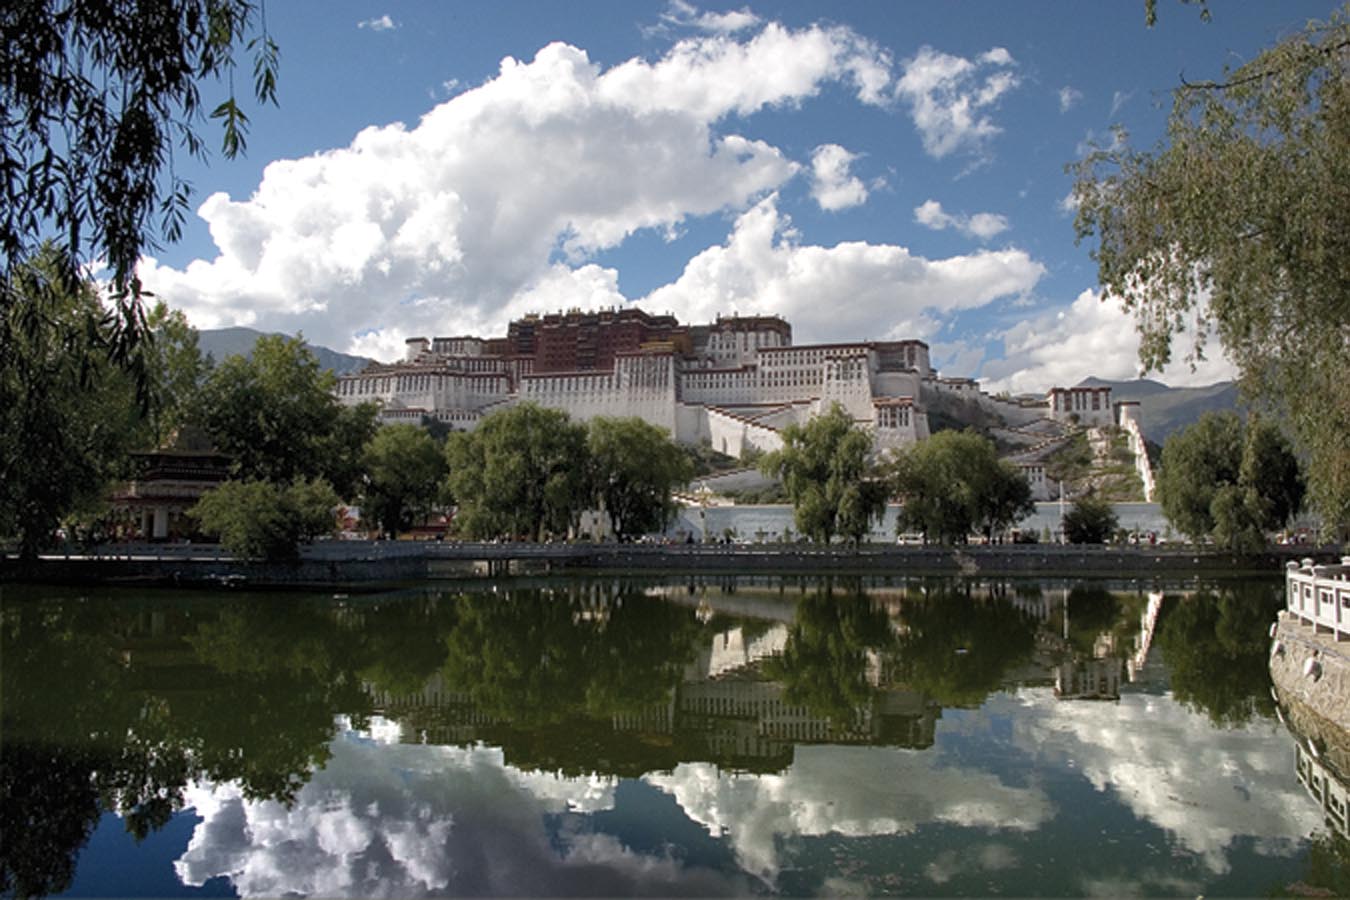 Surplombant Lhassa, le palais du Potala est une sorte de testament du pouvoir administratif aux mains de l’école Guéloug entre le XVIIe siècle et les années 1950. Il a servi à la fois de résidence aux Dalaï-Lamas et de siège du gouvernement tibétain pendant trois siècles. Photo de Claire Pullinger.